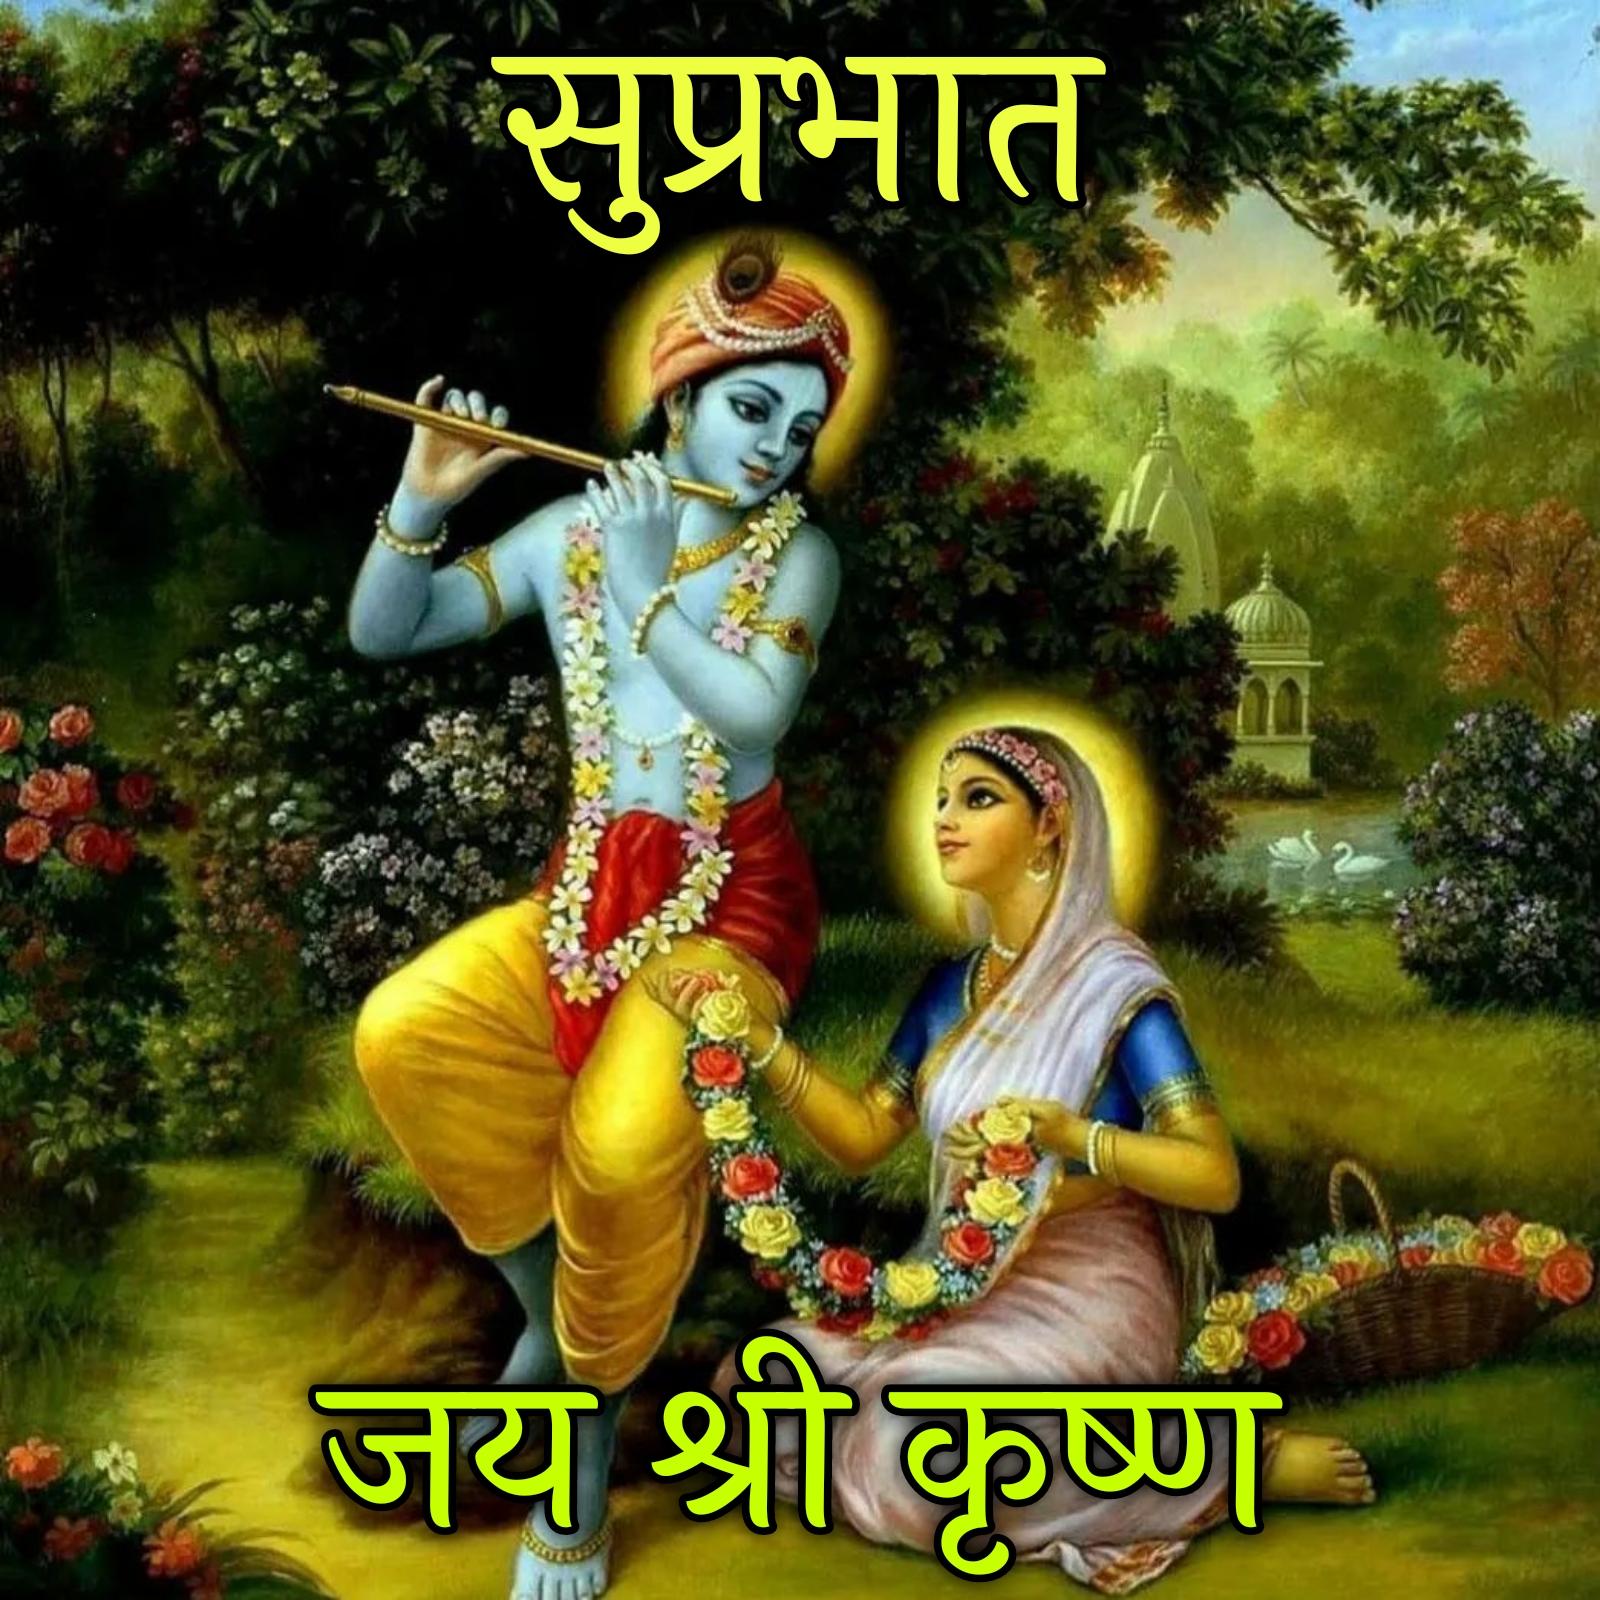 Suprabhat Jai Shri Krishna Images in Hindi - ShayariMaza